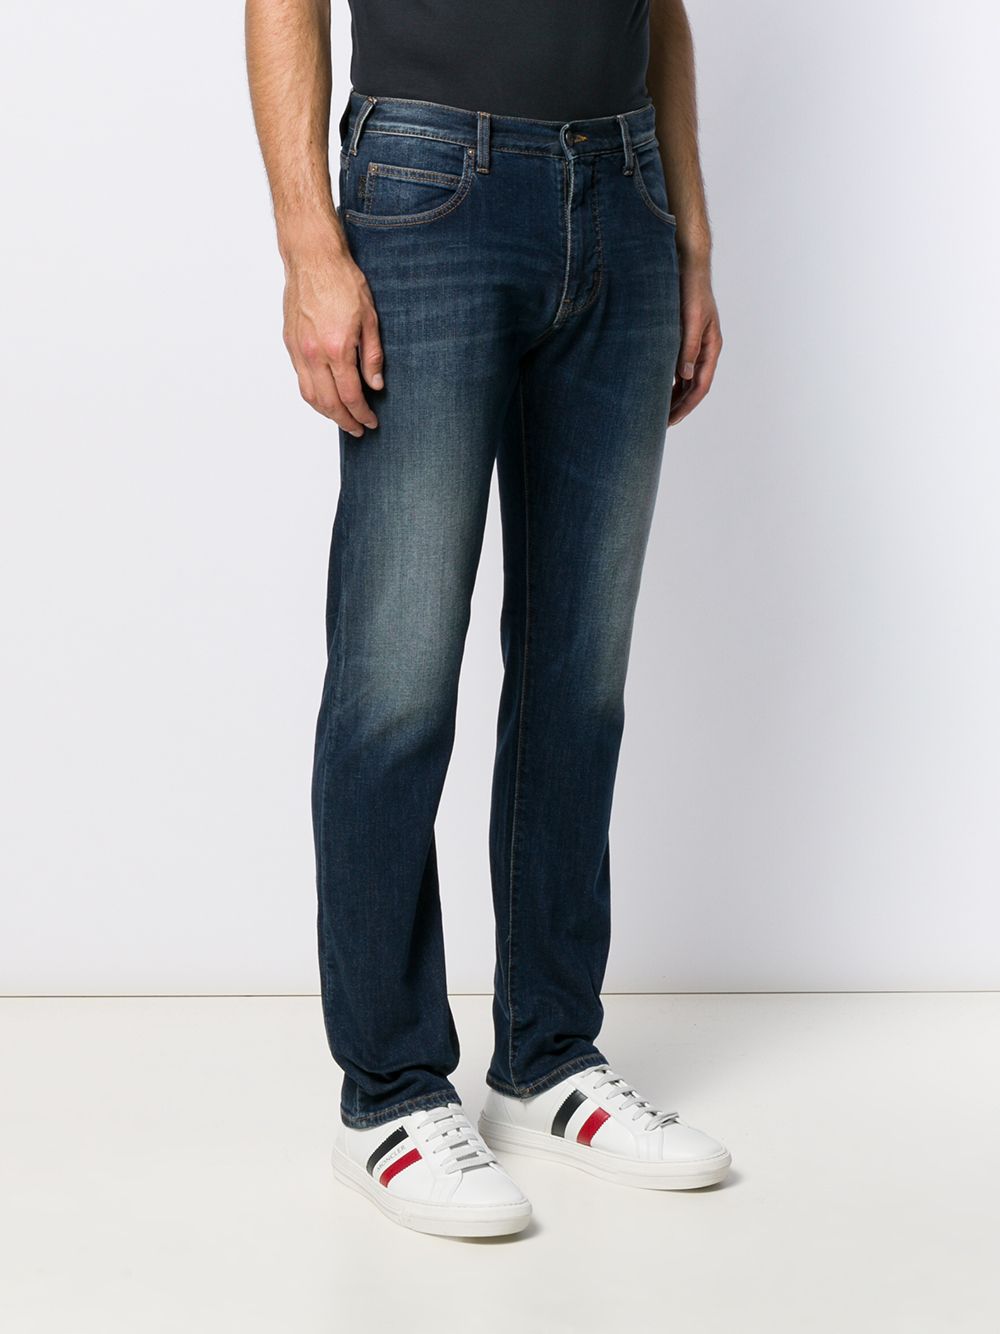 фото Emporio Armani прямые джинсы с эффектом потертости